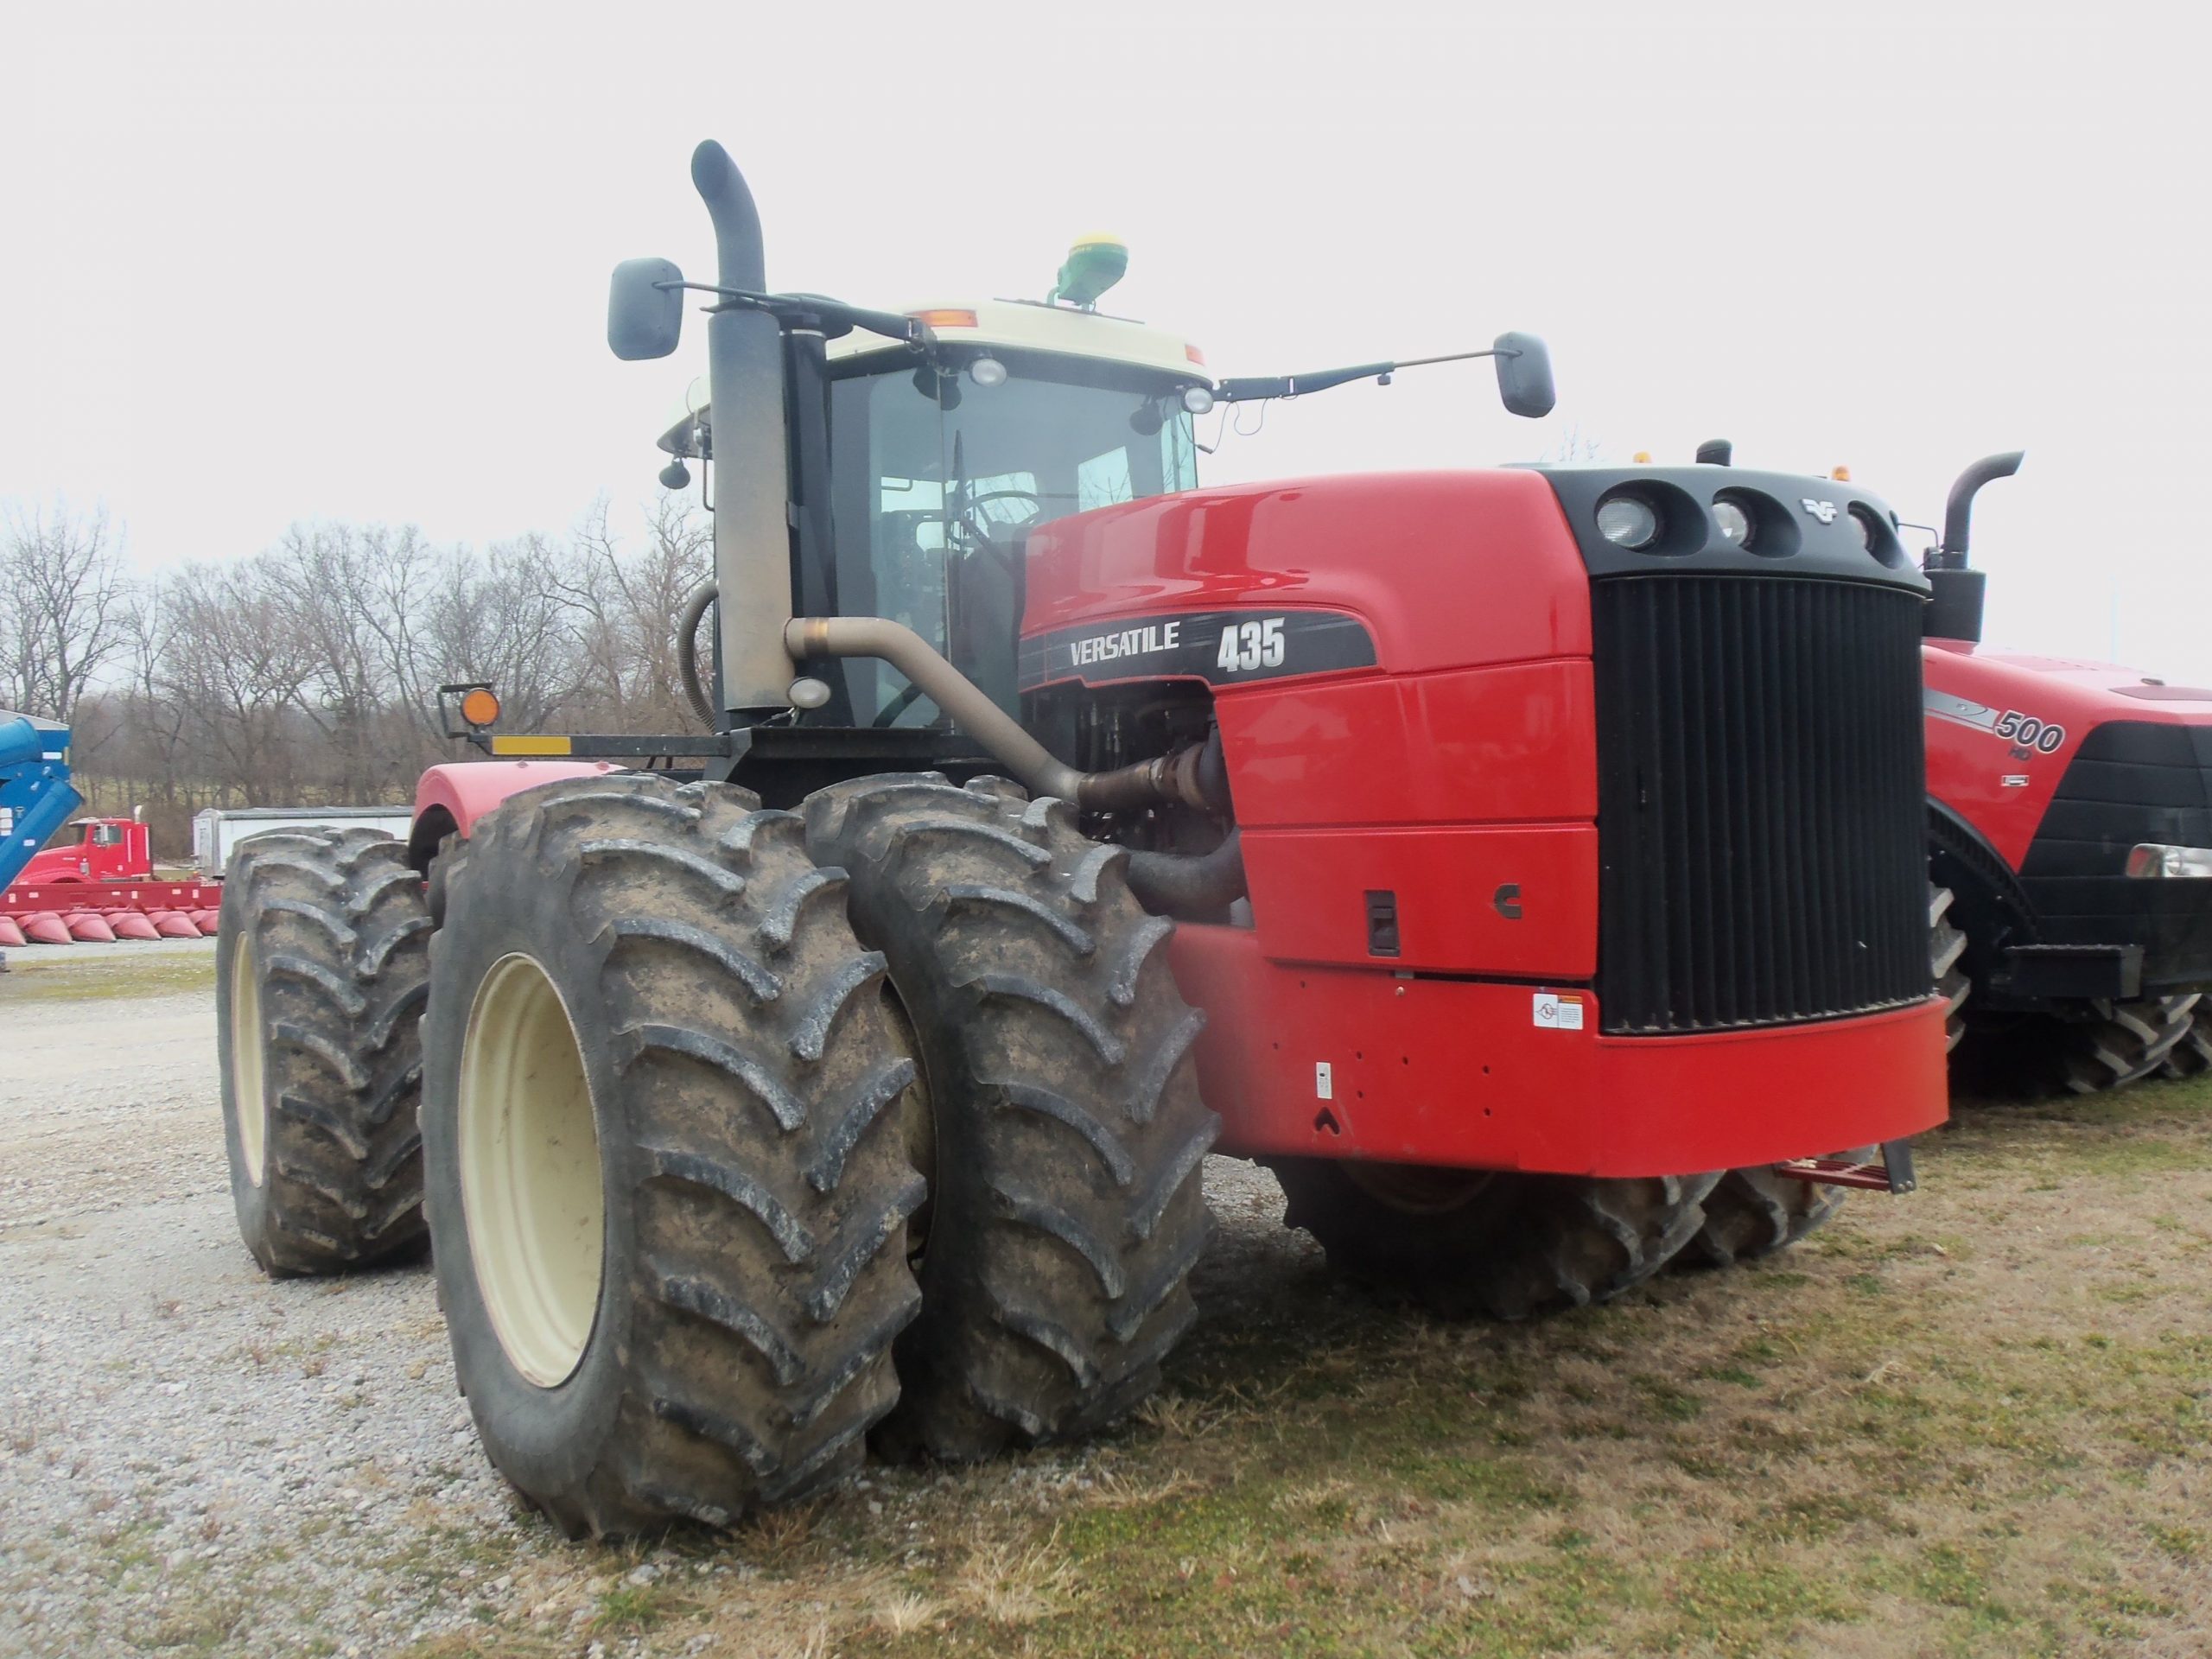 Где подобрать запчасти к трактору buhler versatile 435?